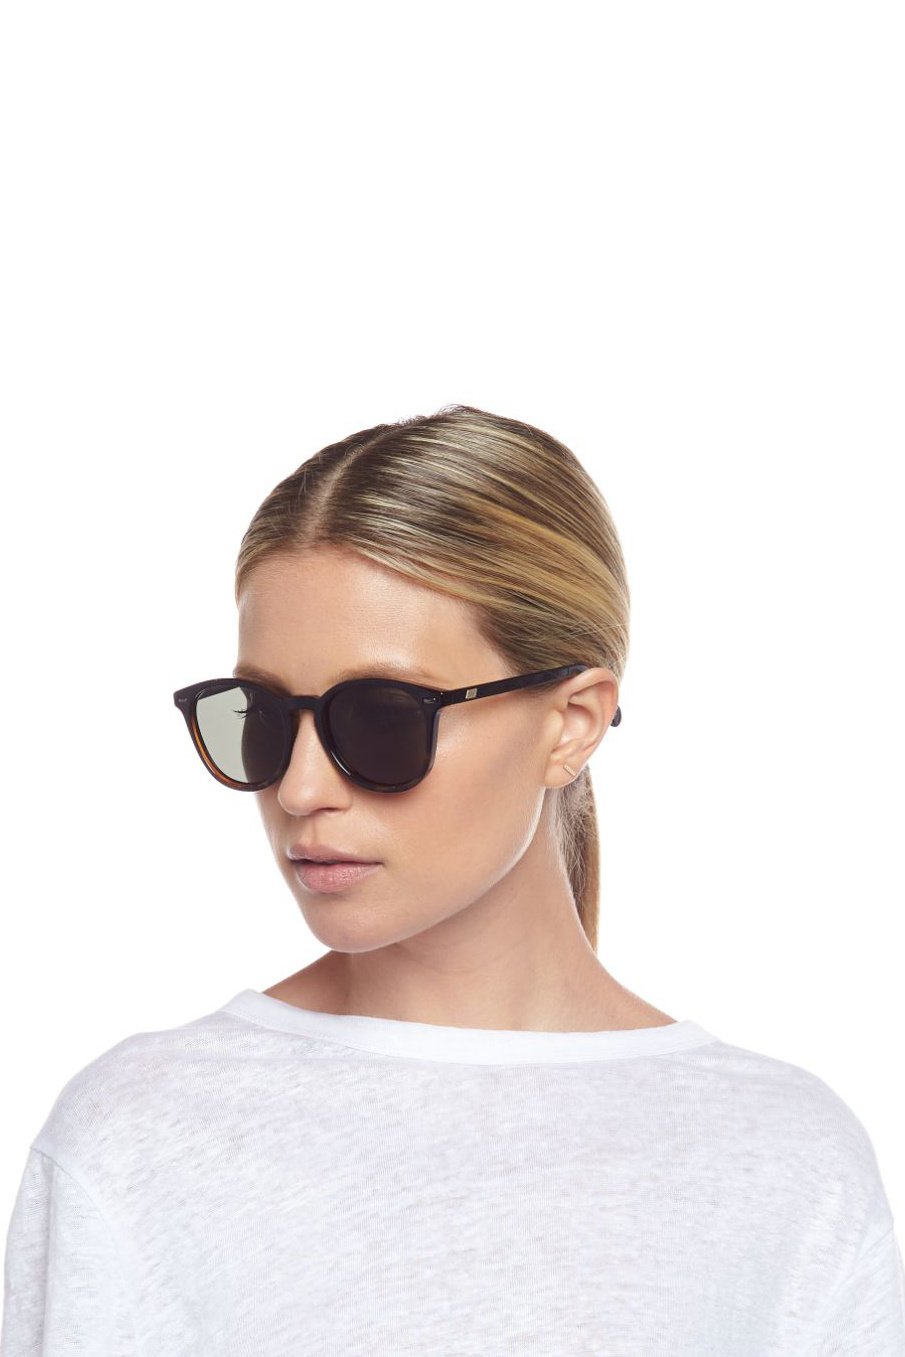 Bandwagon Sunglasses - Black Tortoise Polarized-8